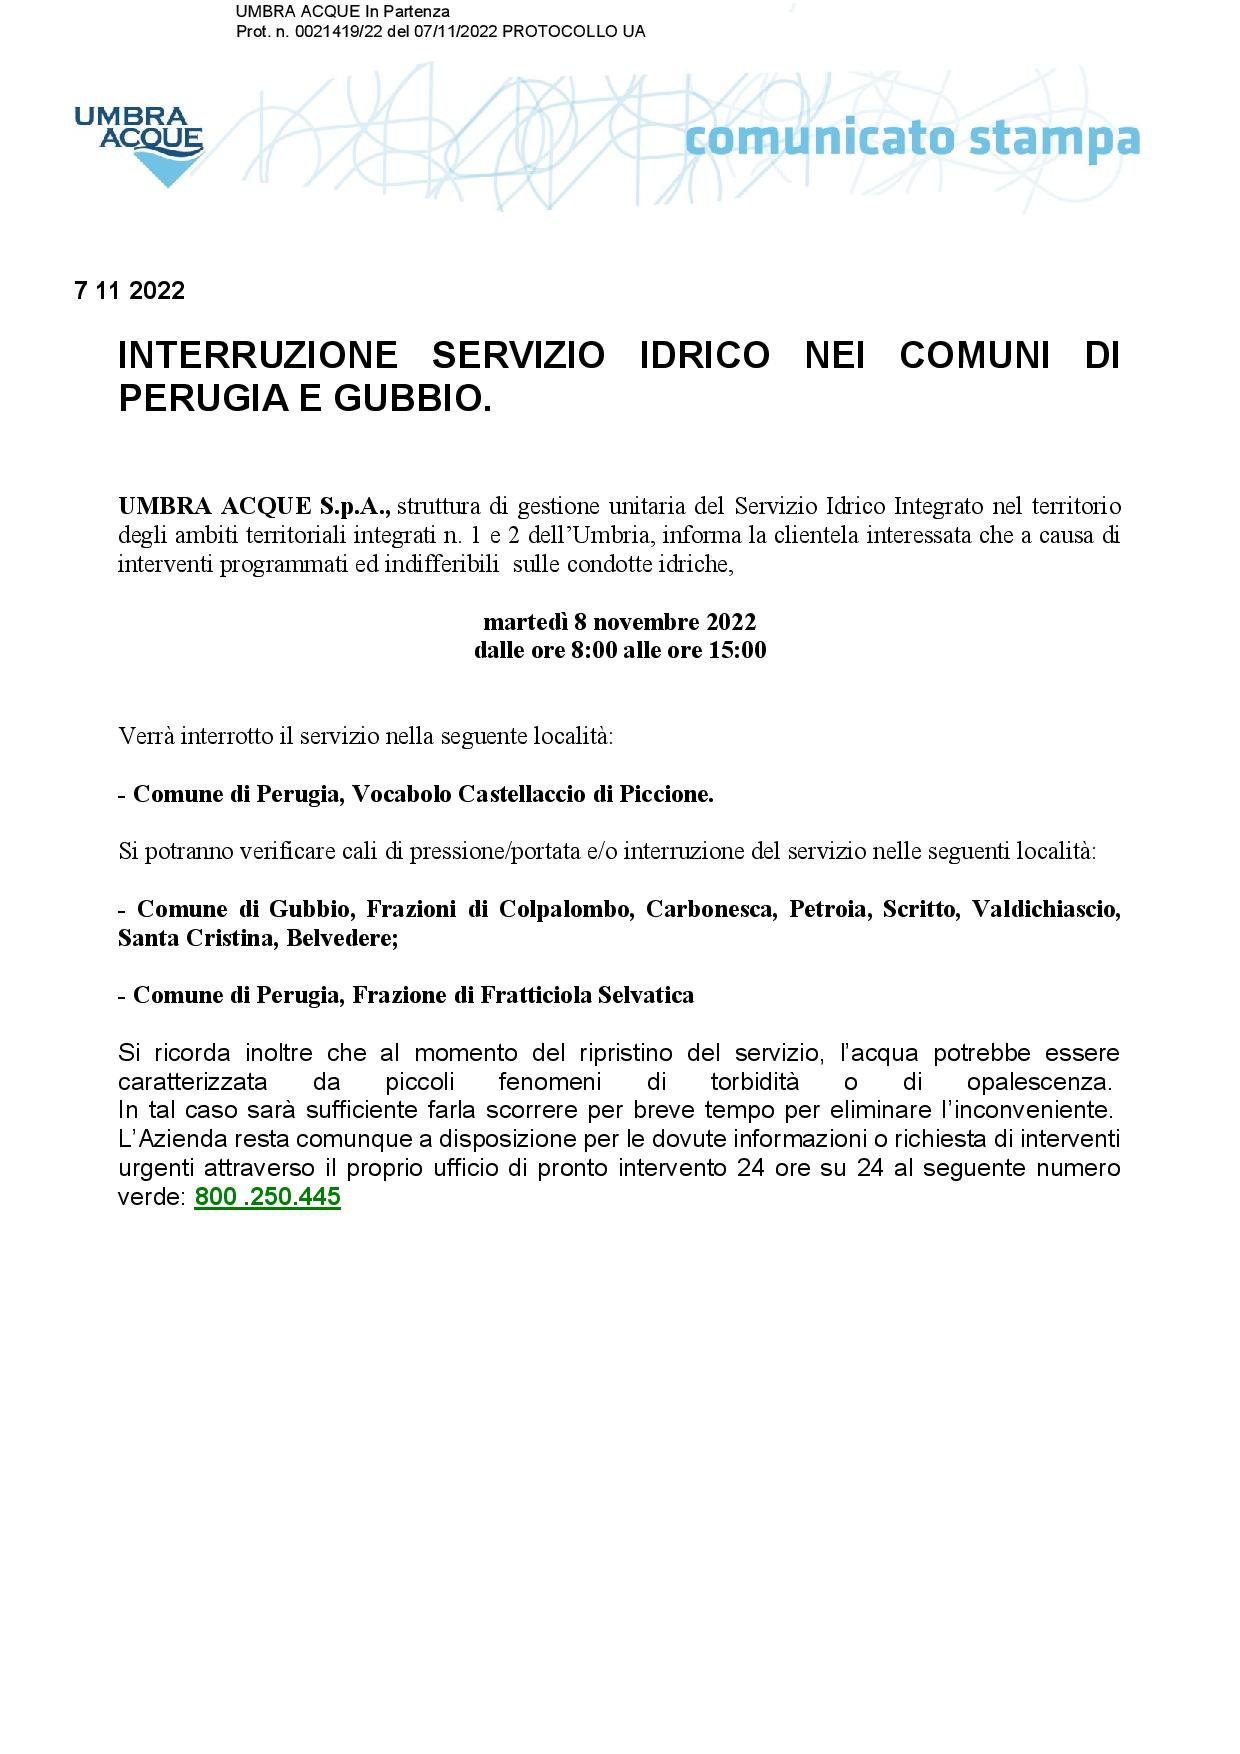 88-INTERRUZIONE-SERVIZIO-IDRICO-COMUNI-PERUGIA-E-GUBBIO-8-NOVEMBRE-page-001 1383